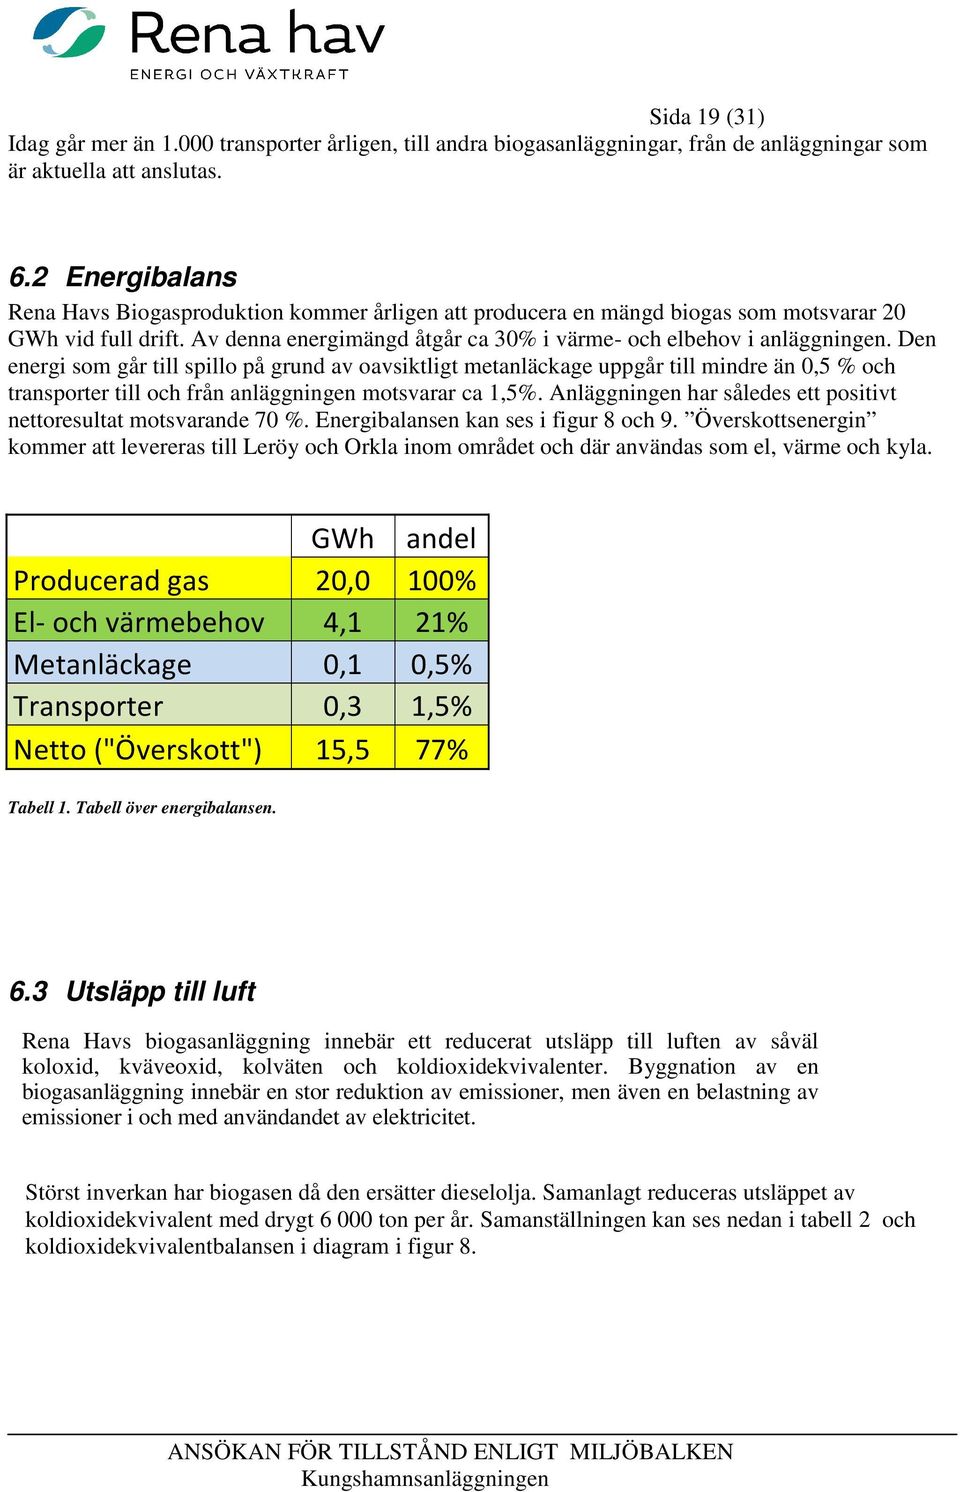 Den energi som går till spillo på grund av oavsiktligt metanläckage uppgår till mindre än 0,5 % och transporter till och från anläggningen motsvarar ca 1,5%.